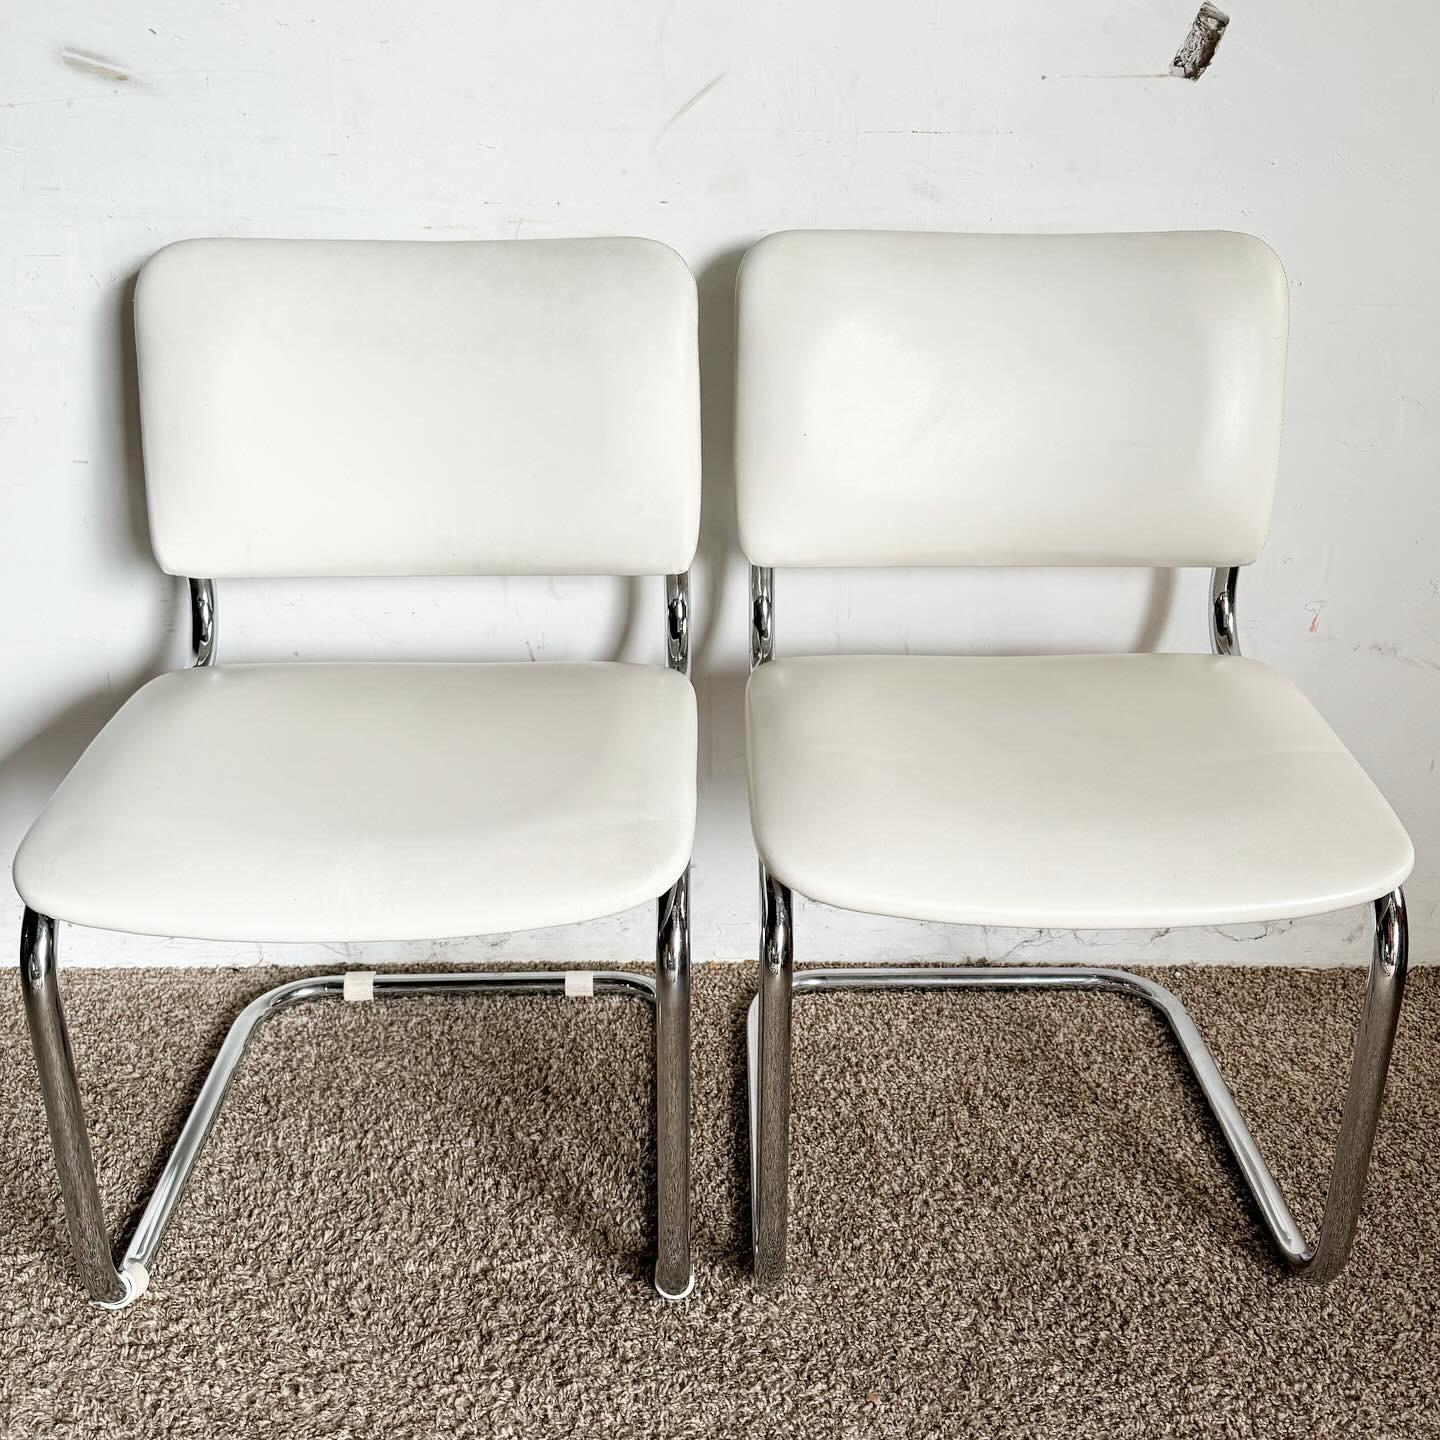 Die Elegant Mid-Century Chrome Dining Chairs von Loewenstein/Oggo verbinden Stil und Komfort. Mit ihren verchromten Freischwingergestellen und den weißen Vinylpolstern verkörpern sie die moderne Eleganz der Jahrhundertmitte und passen perfekt zu